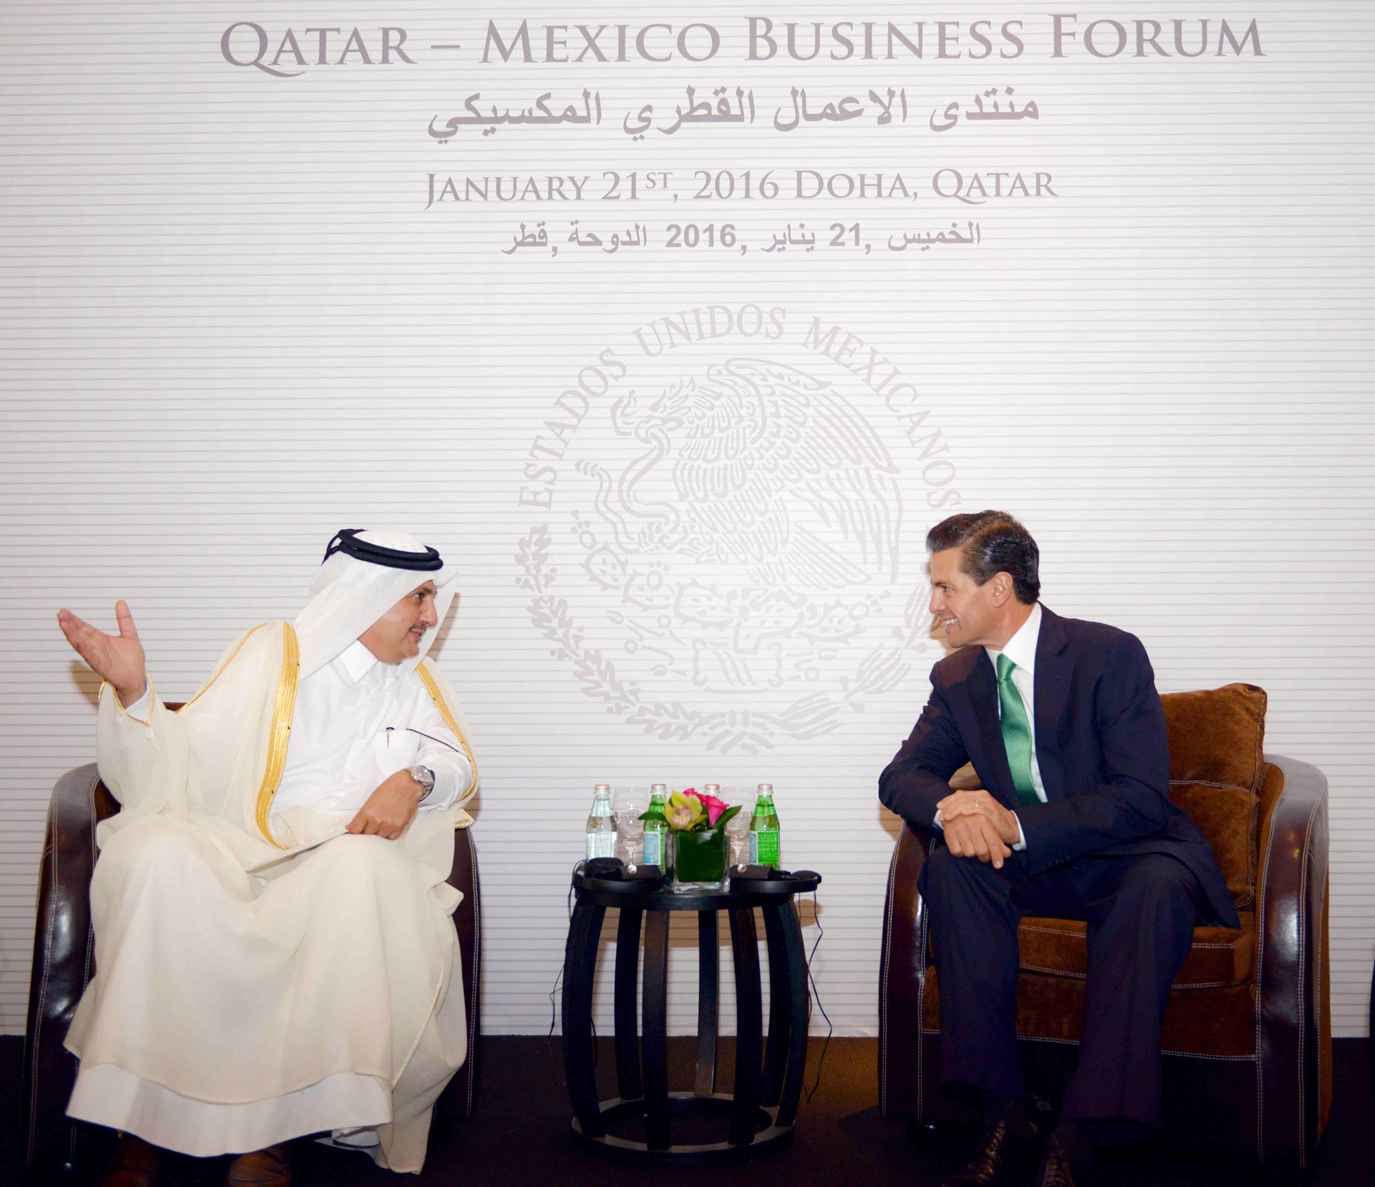 Invitan a Qatar a invertir en la infraestructura nacional - Qatar